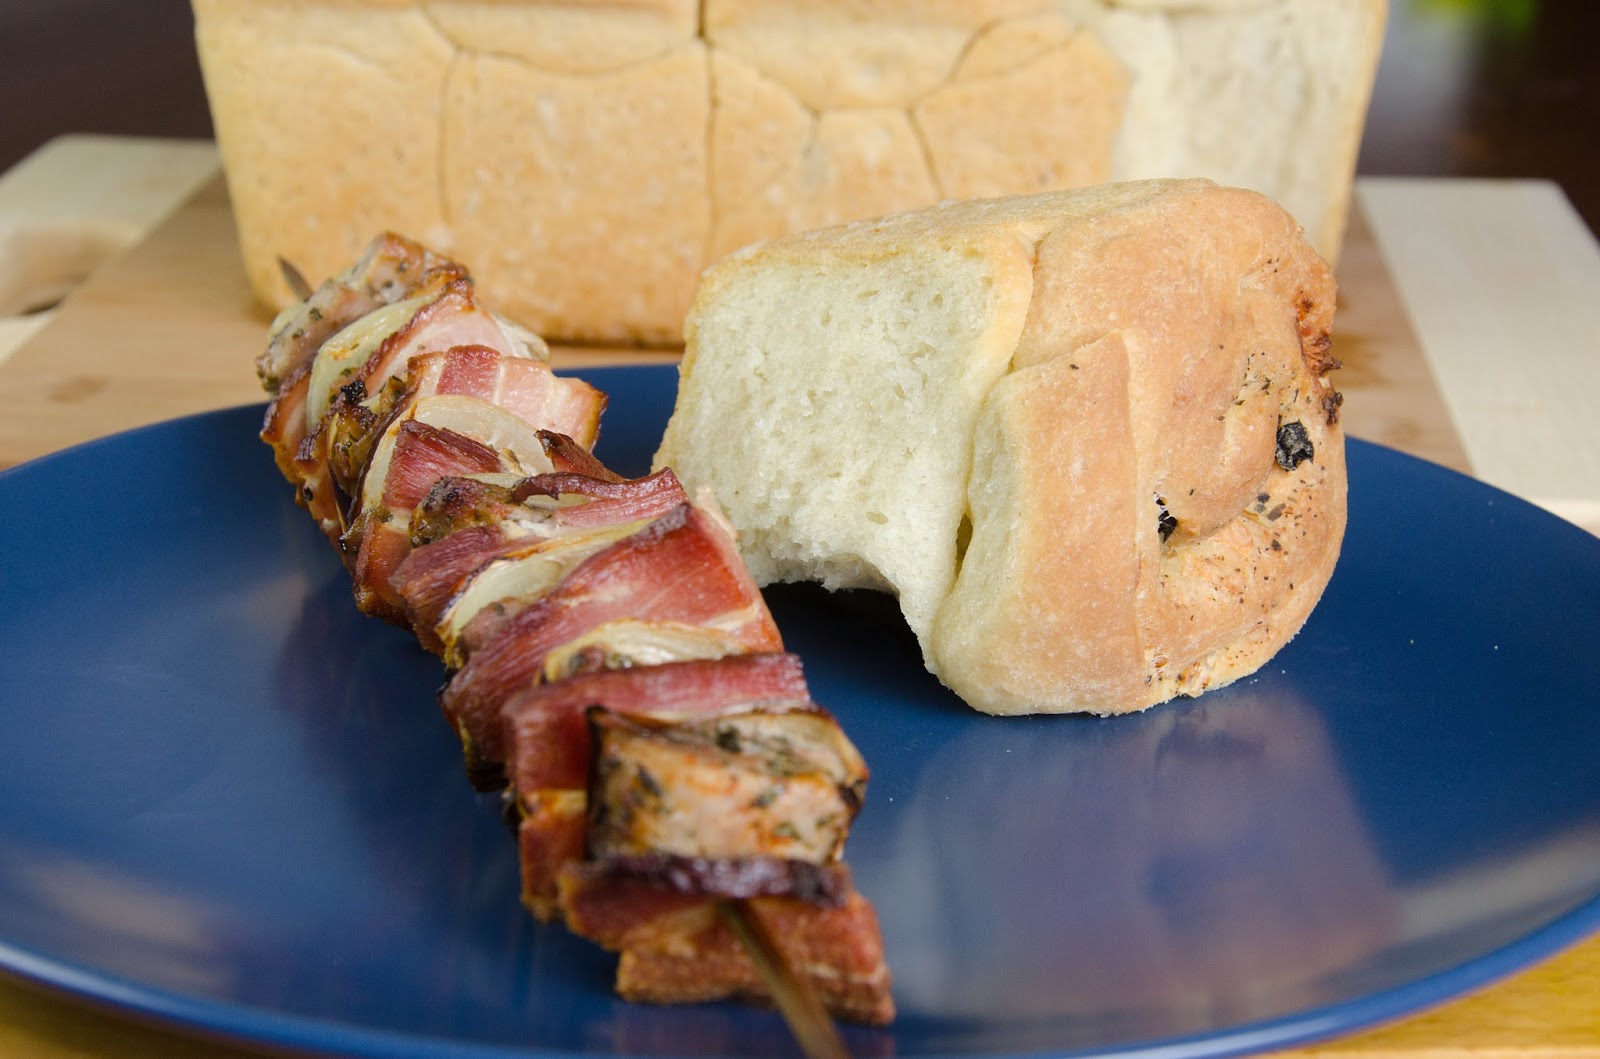 Chleb biały, drożdżowy z kozim serem, oliwkami i ziołami, do odrywania